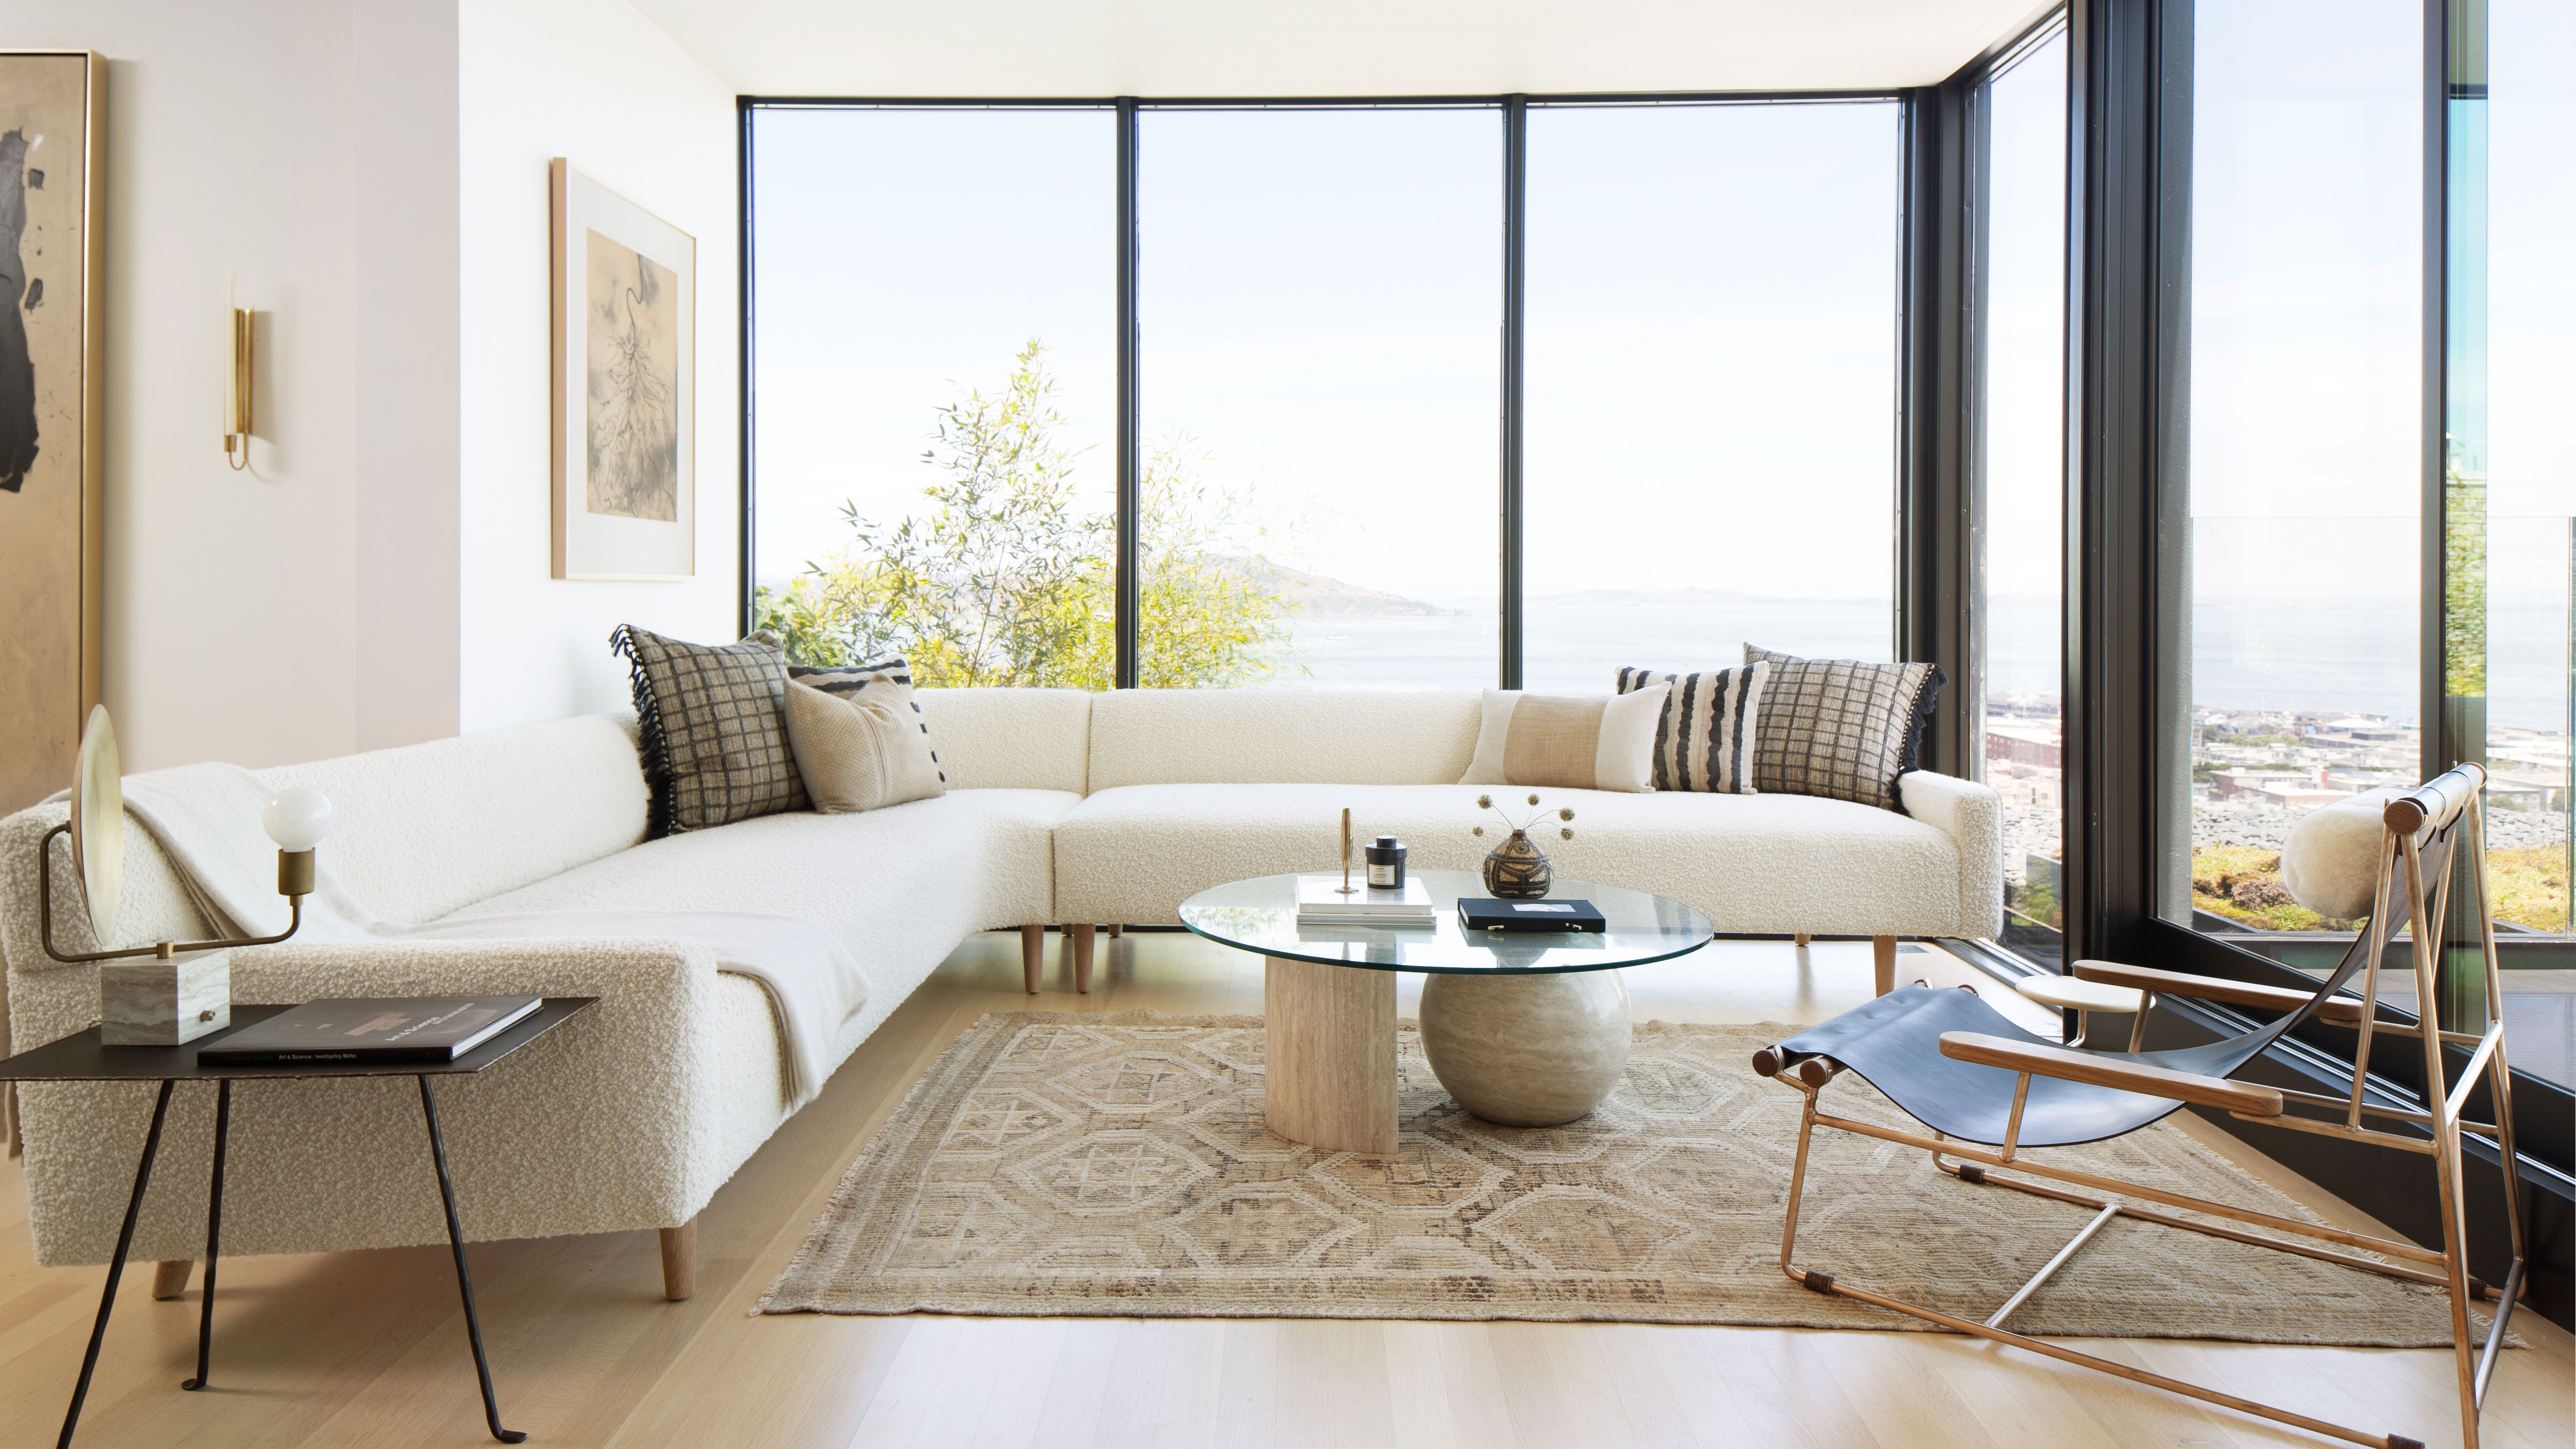 Minimalist living room ideas: 12 simple schemes to spark joy